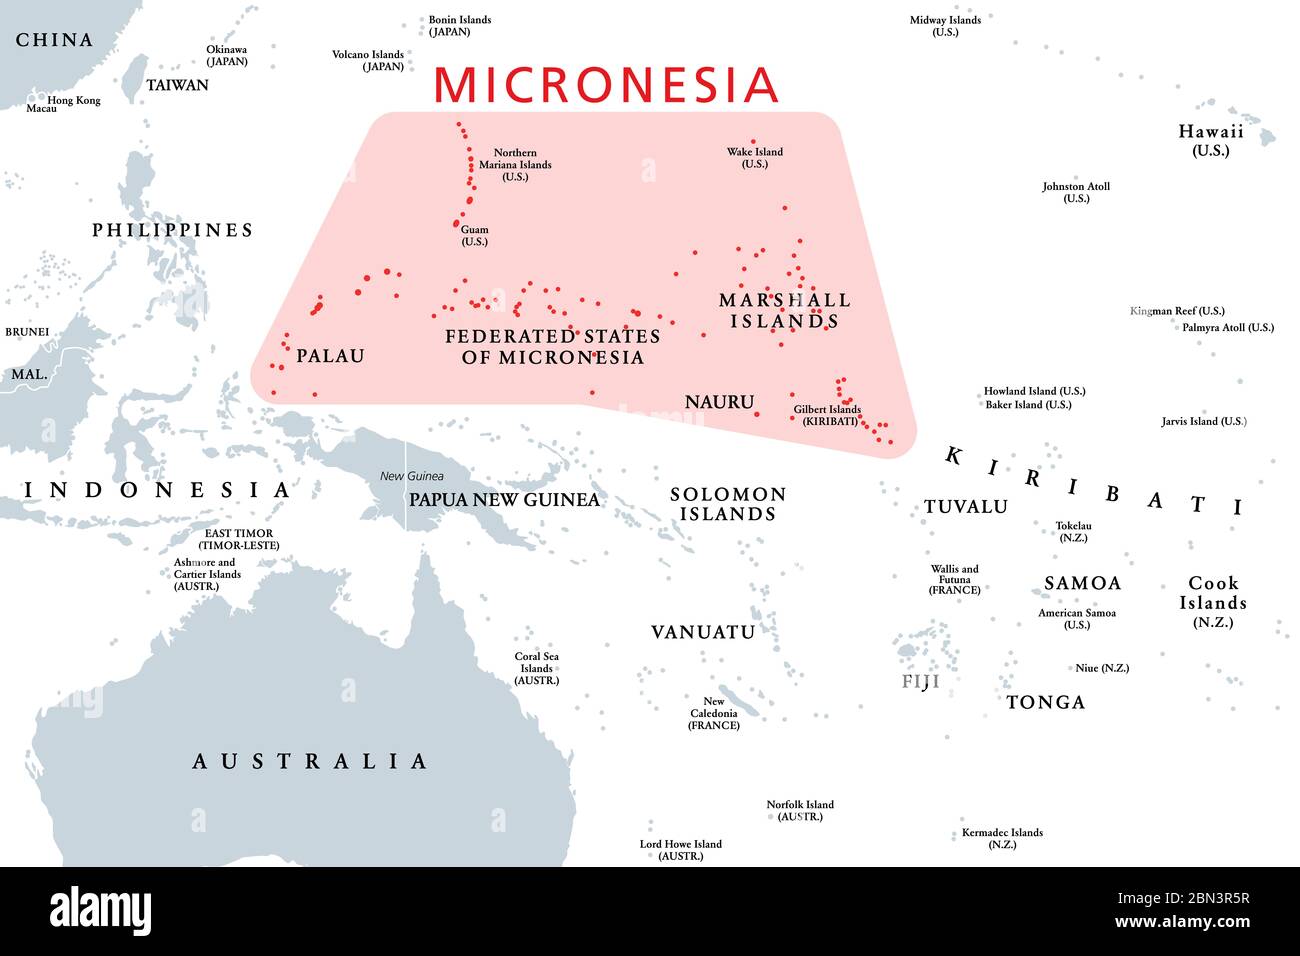 Micronesia Subregion De Oceania Mapa Politico Compuesto Por Miles De Pequenas Islas En El Oceano Pacifico Occidental Junto A Polinesia Y Melanesia 2bn3r5r 